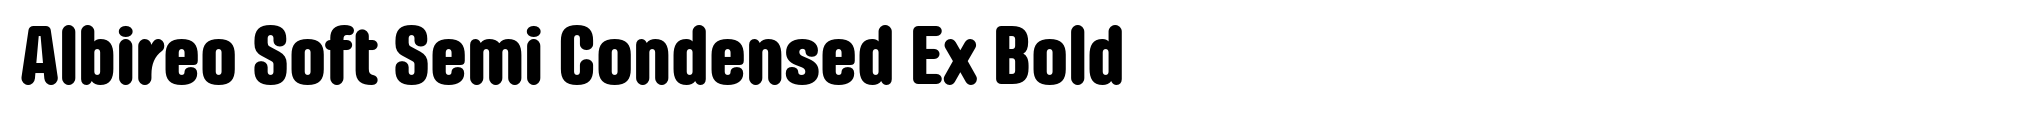 Albireo Soft Semi Condensed Ex Bold image